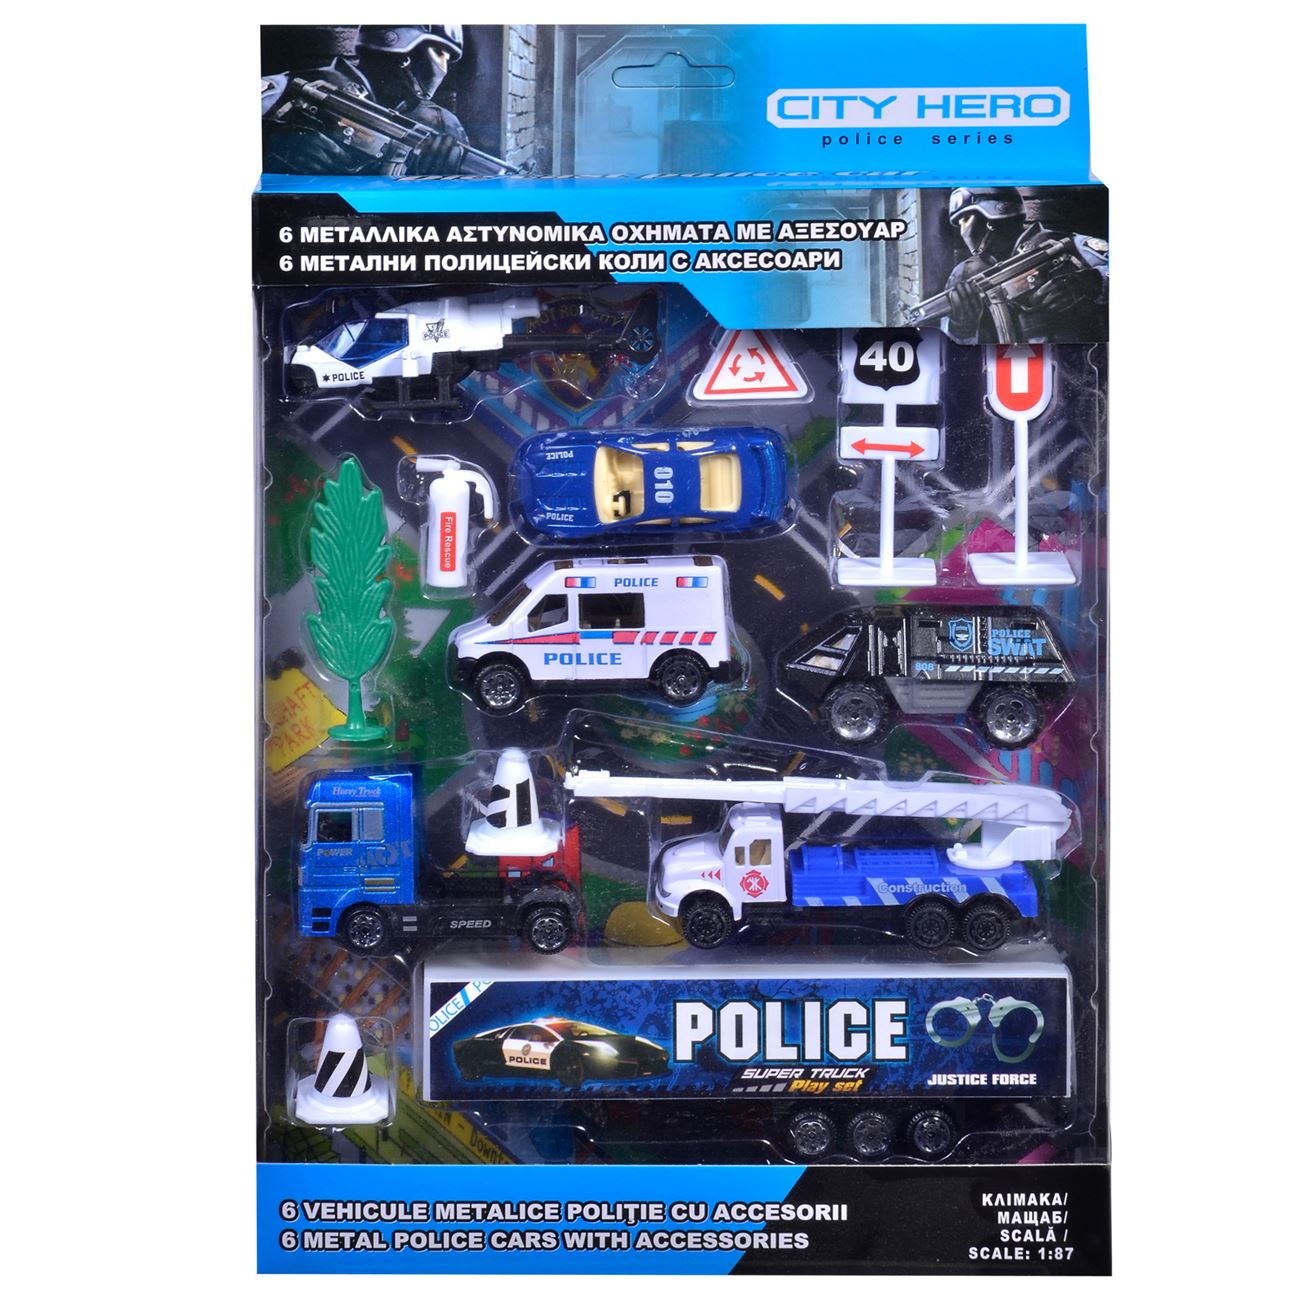 Rendőrségi járművek és kiegészítők